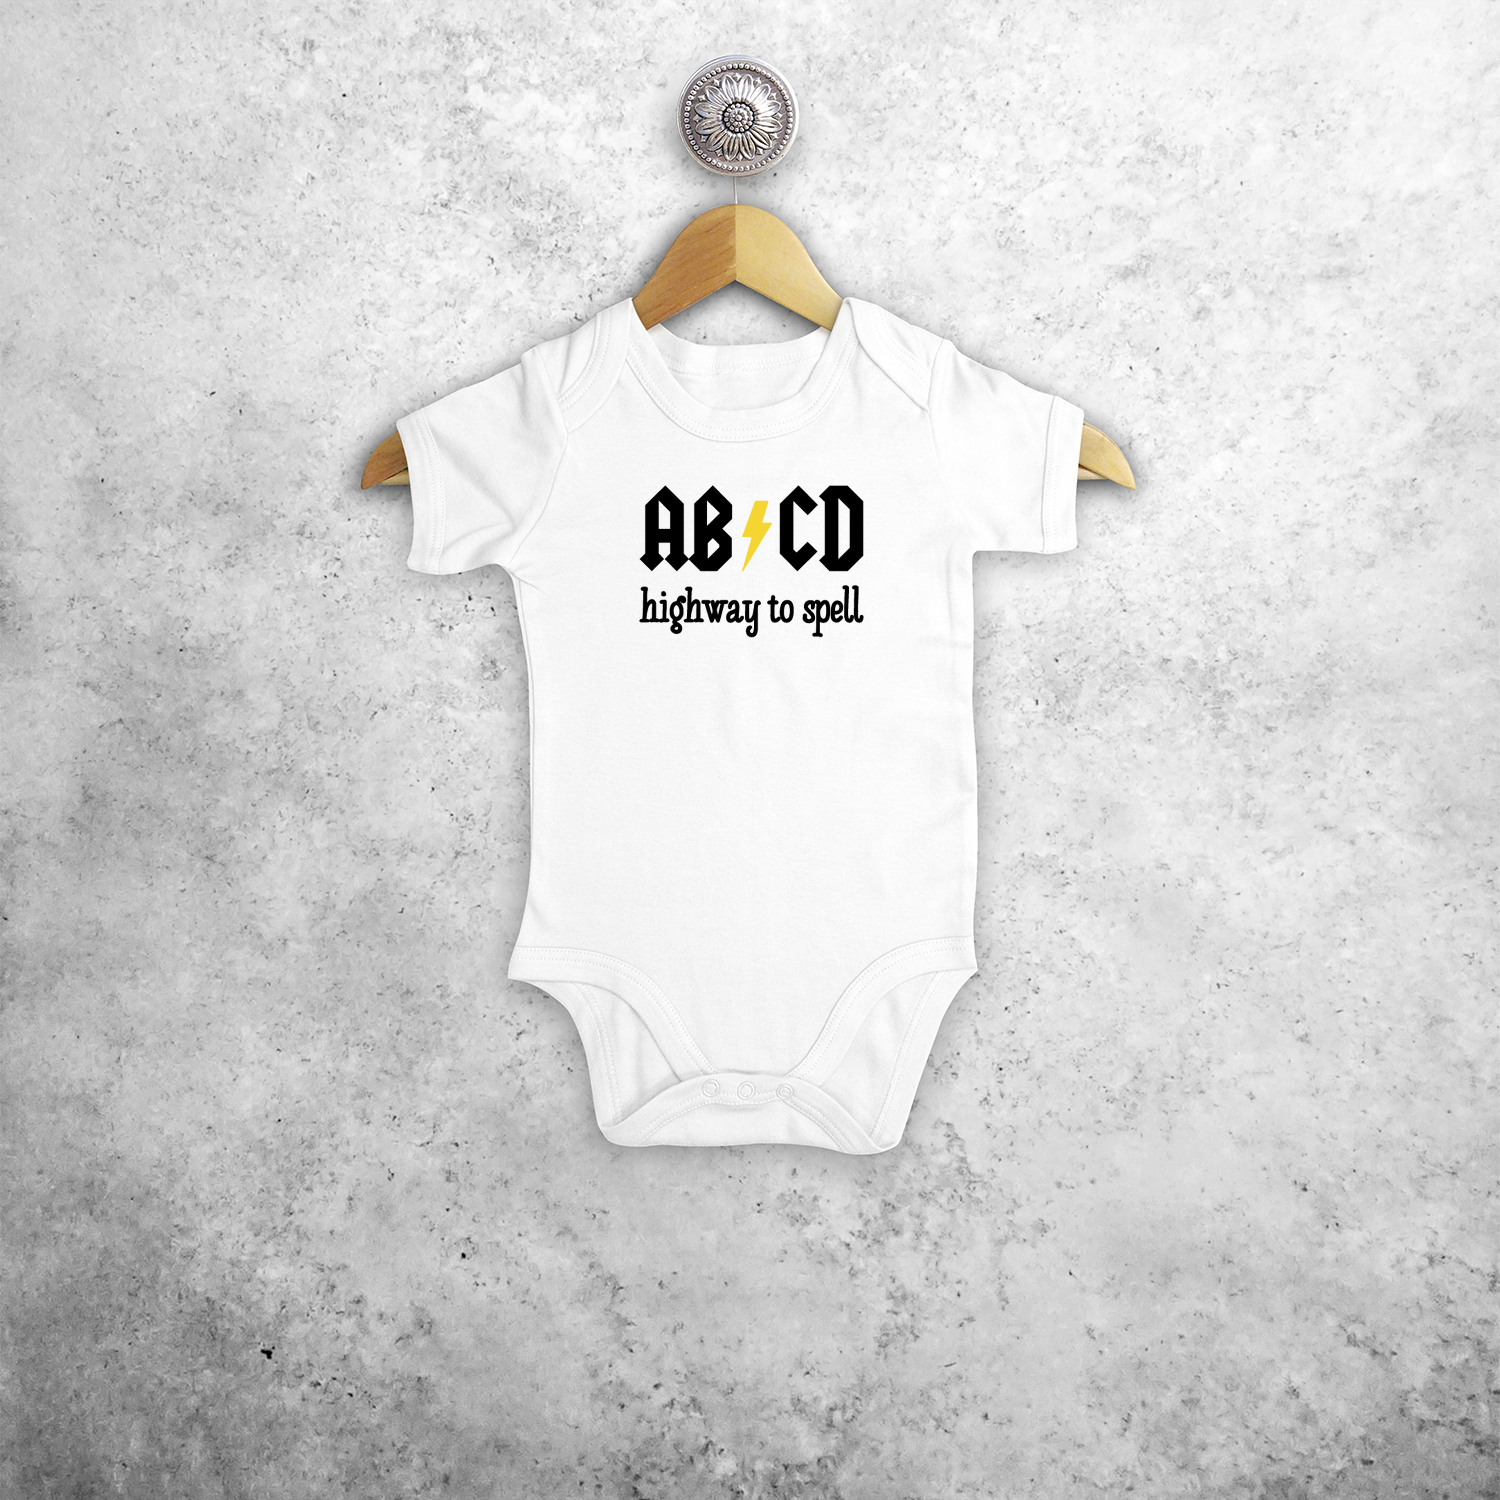 ABCD - Highway to spell' baby kruippakje met korte mouwen